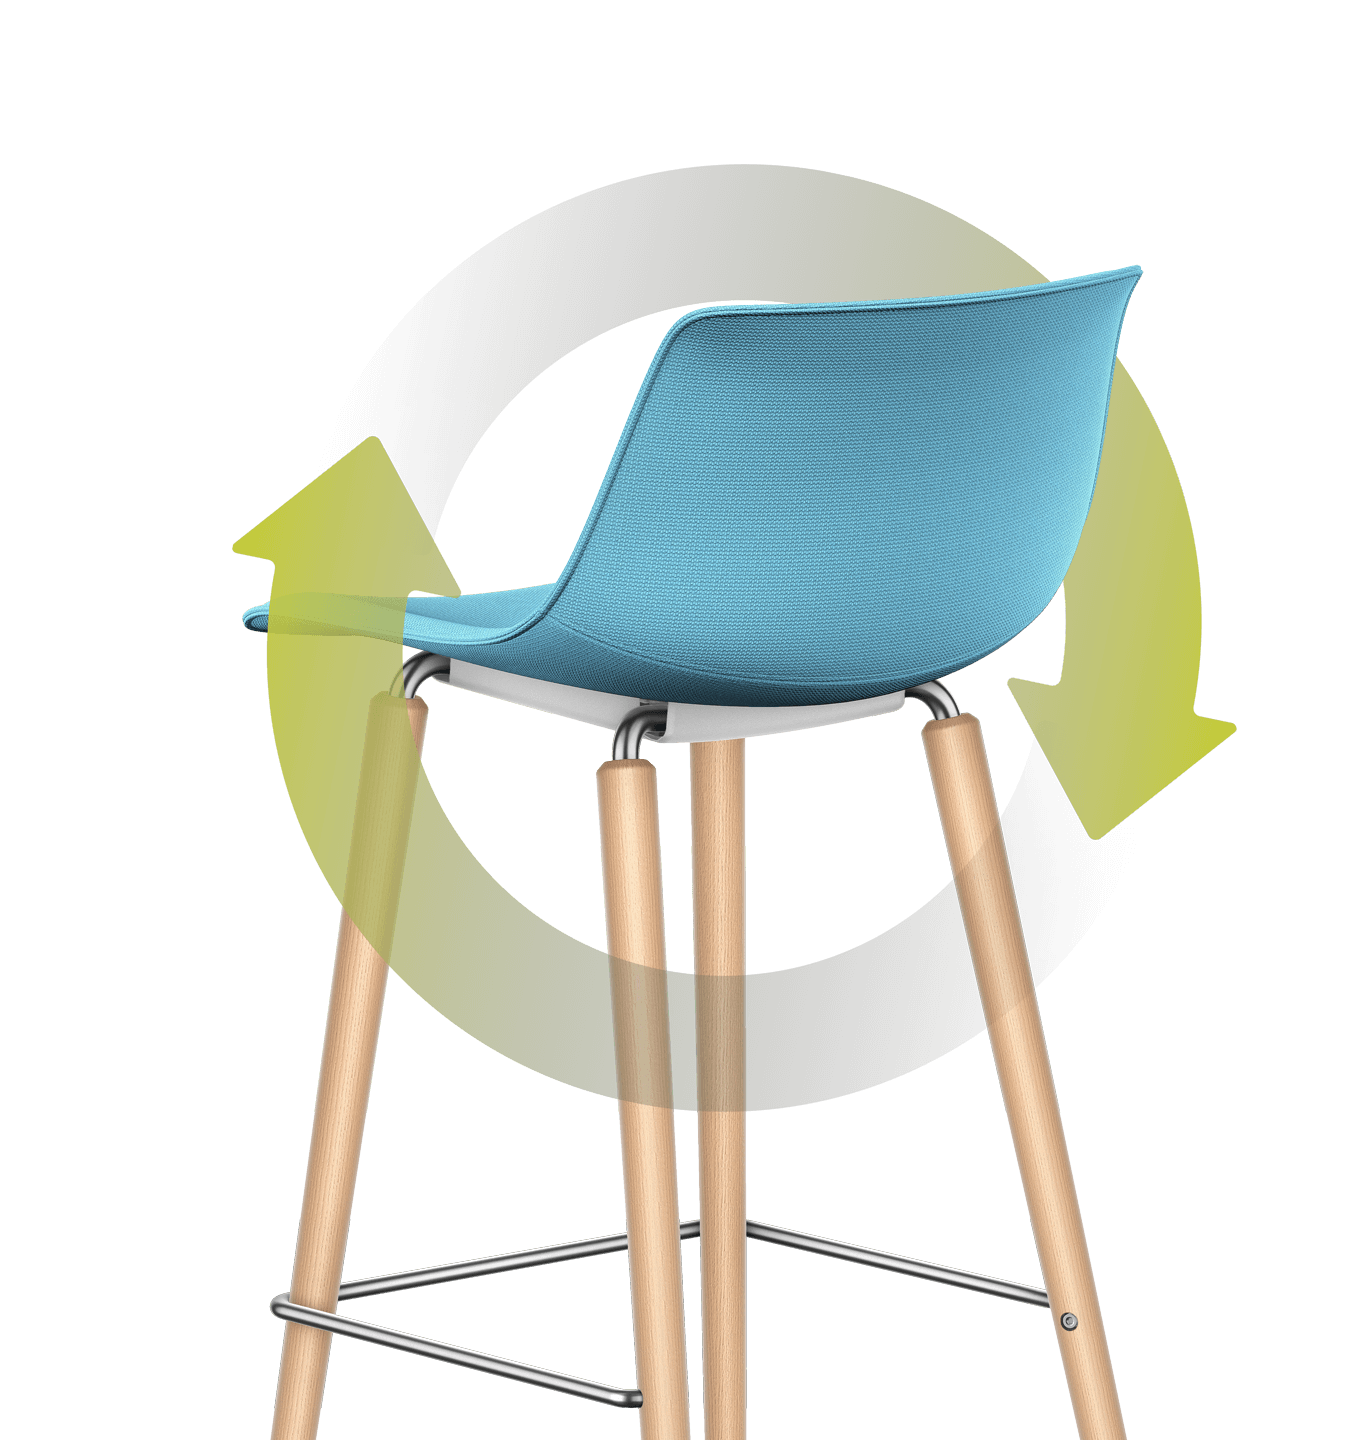 Una foglia verde illustrata avvolge la sedia bar con imbottitura del sedile e dello schienale blu e con telaio in legno a quattro gambe. Lo stelo cinge la sedia formando un cerchio, la foglia si appoggia sul retro dell'imbottitura dello schienale.